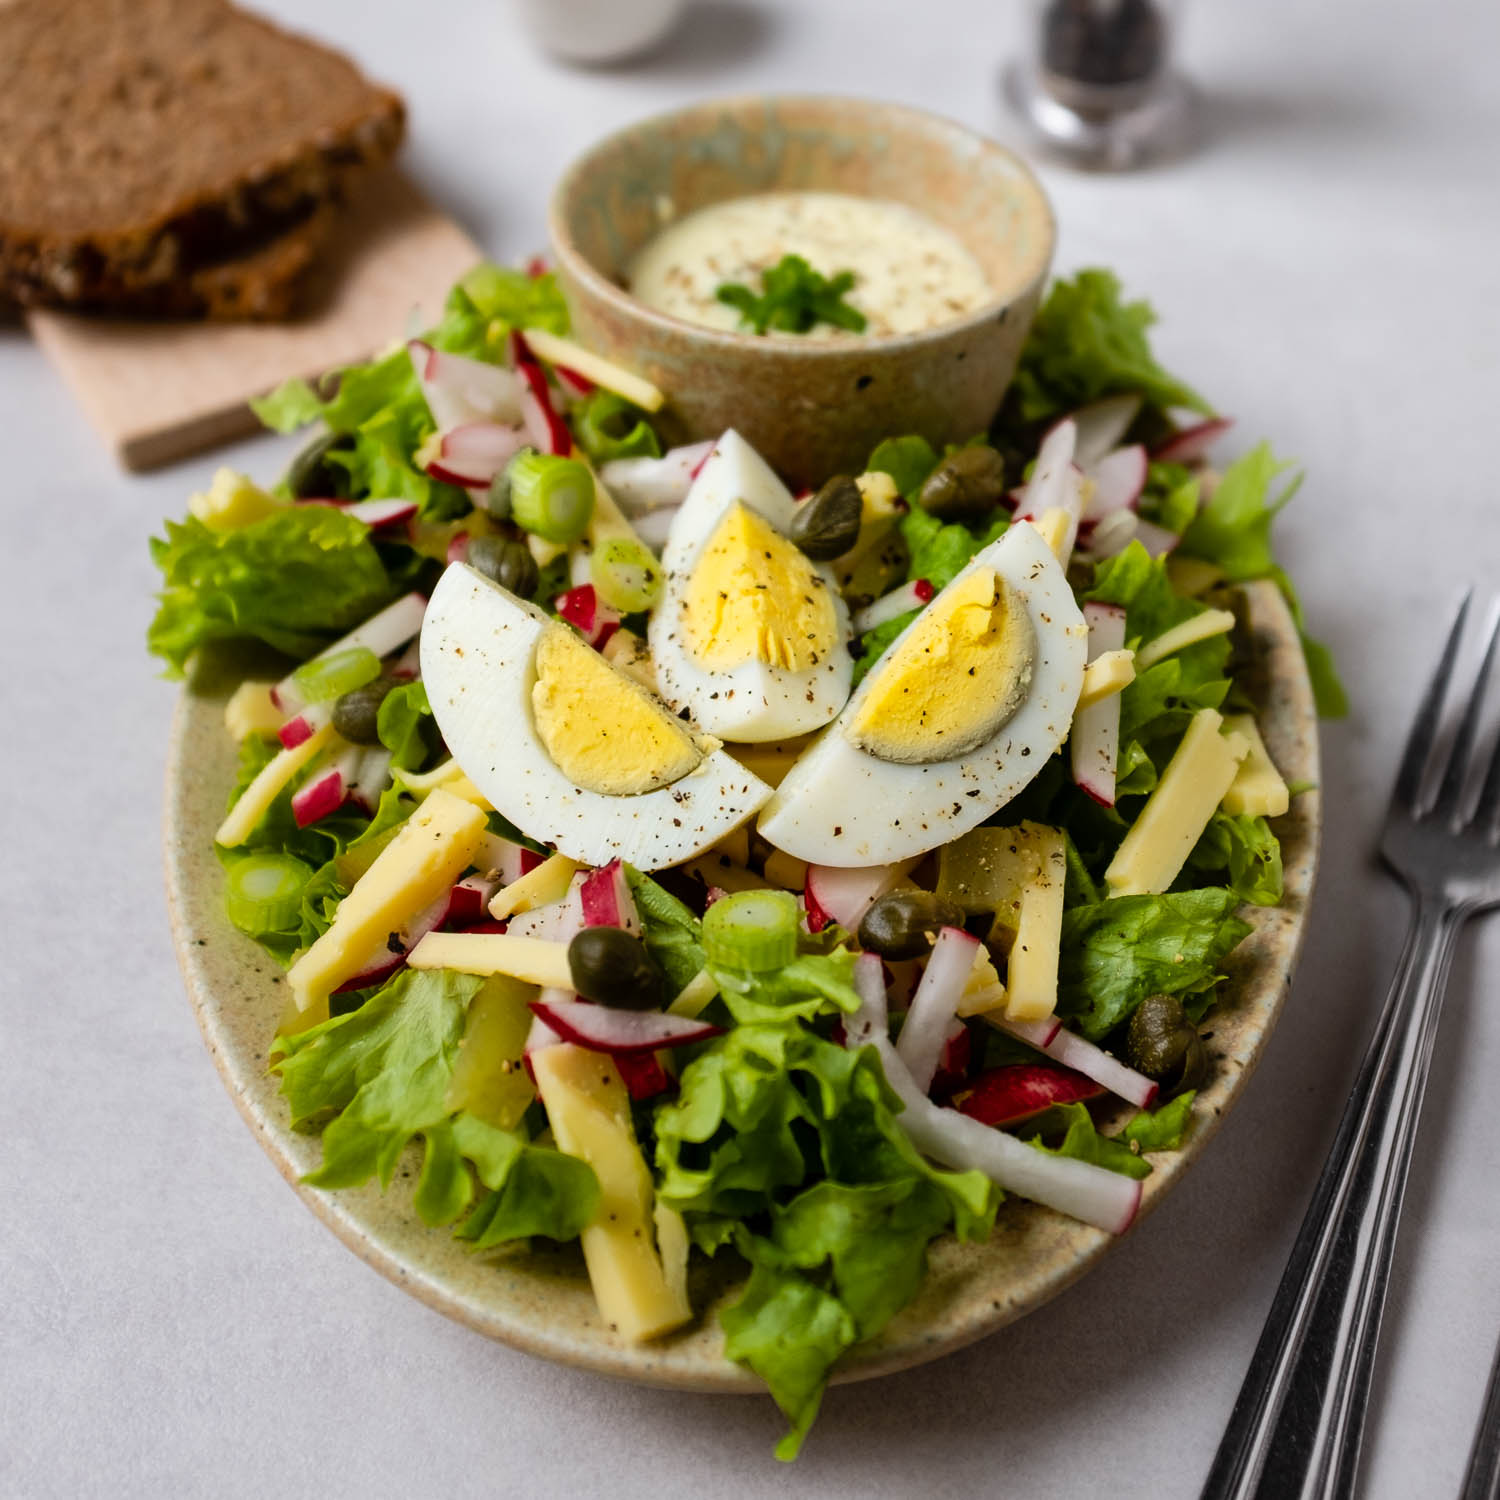 Dieser herzhafte Käse-Ei-Salat schmeckt köstlich. Die Kombination aus sauren Gurken, salzigen Kapern, milden Käse und leicht scharfen Radieschen macht dem Gaumen Spaß. Egal ob aus Partysalat oder leckerem Snack.